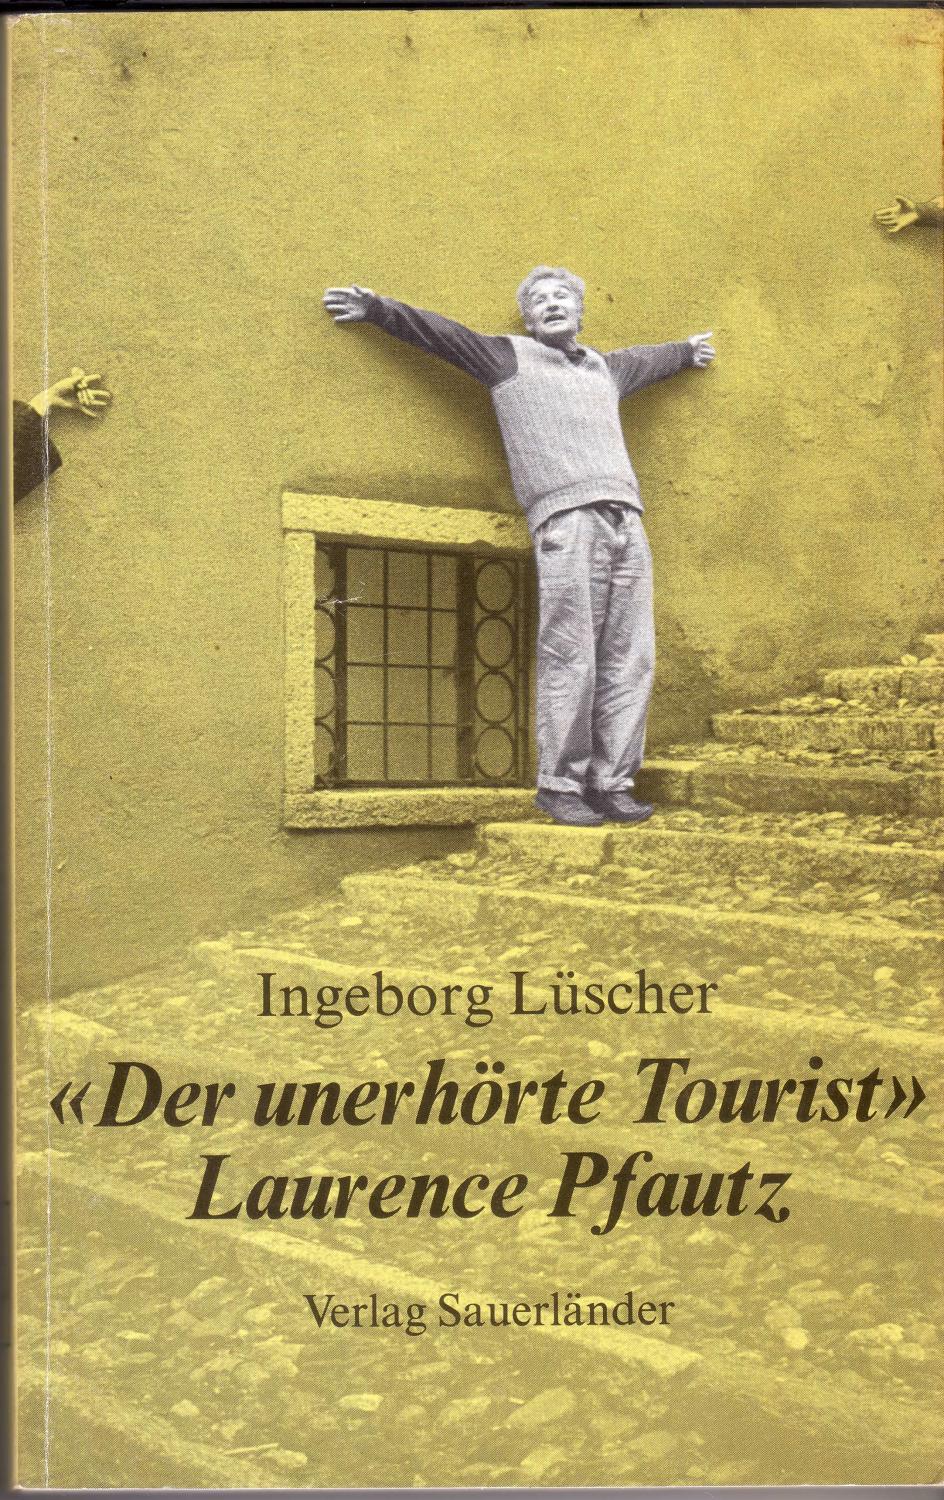 Der unerhörte Tourist - Laurence Pfautz - Ingeborg Lüscher